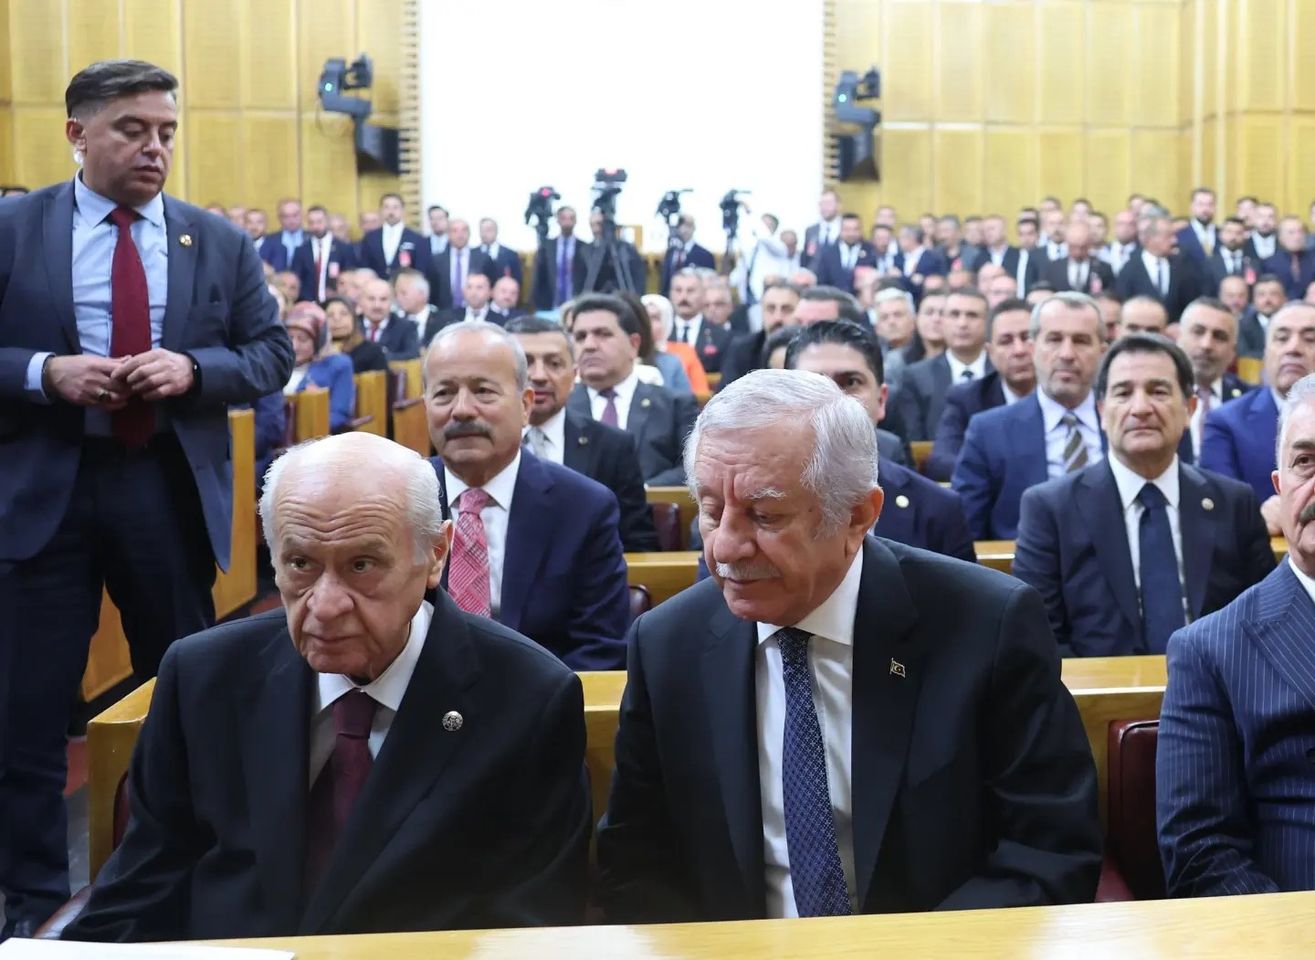 MHP Lideri Devlet Bahçeli Yönetimde Asalet ve Tevazu İstedi